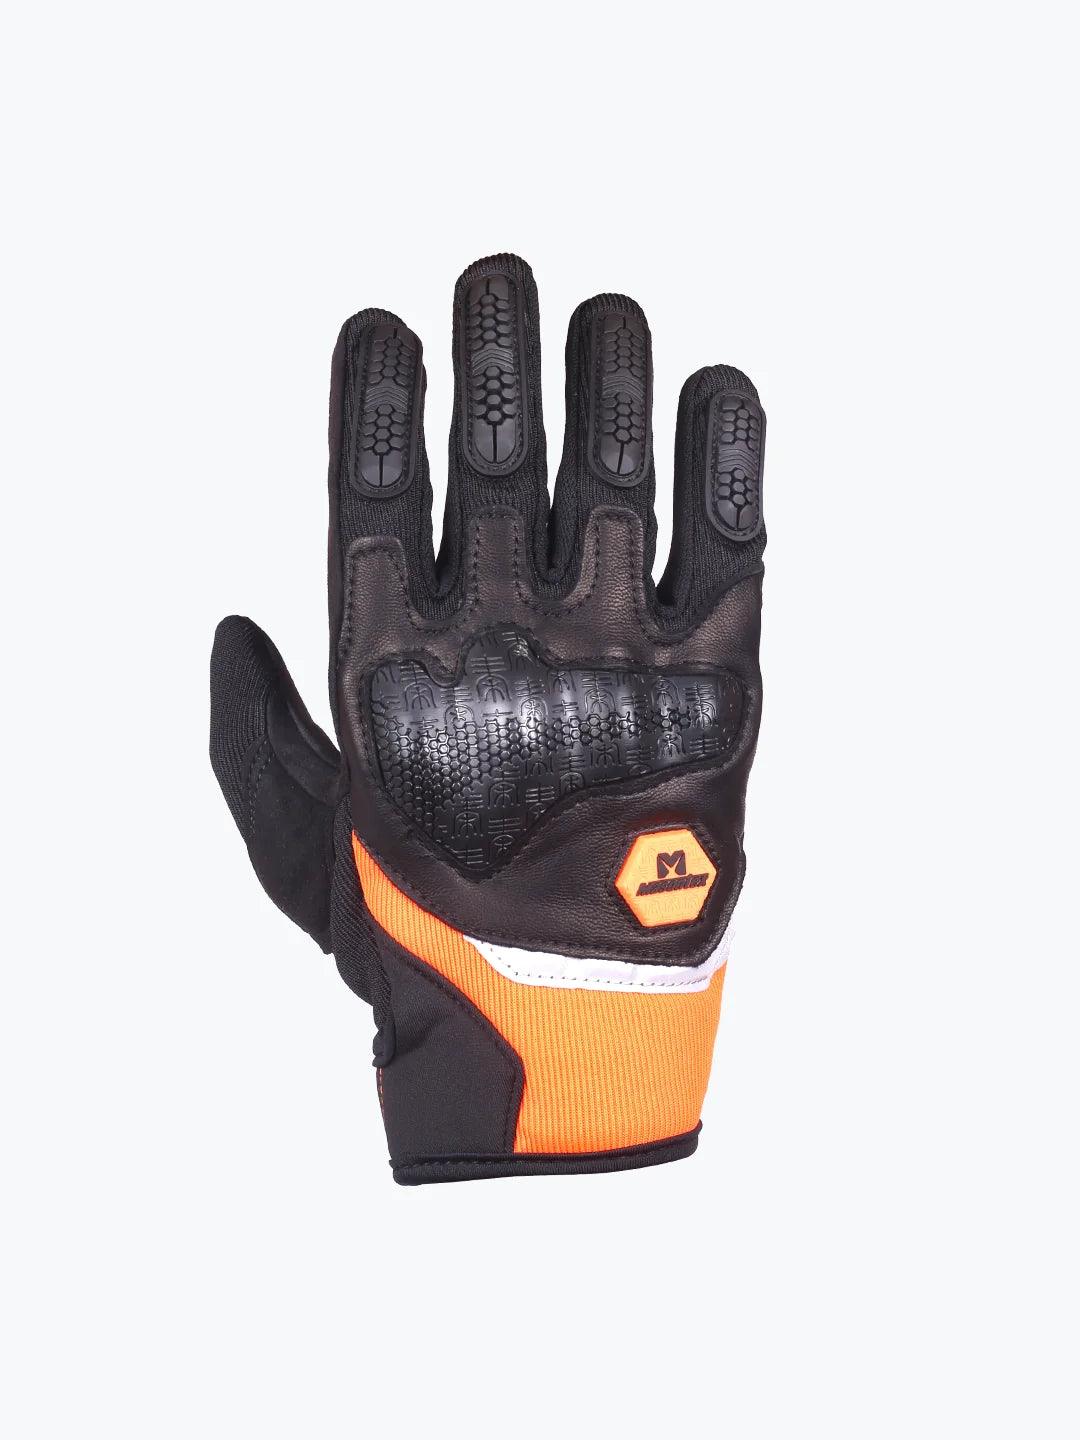 Masontex Full Gloves Black Orange M30IV - Moto Modz